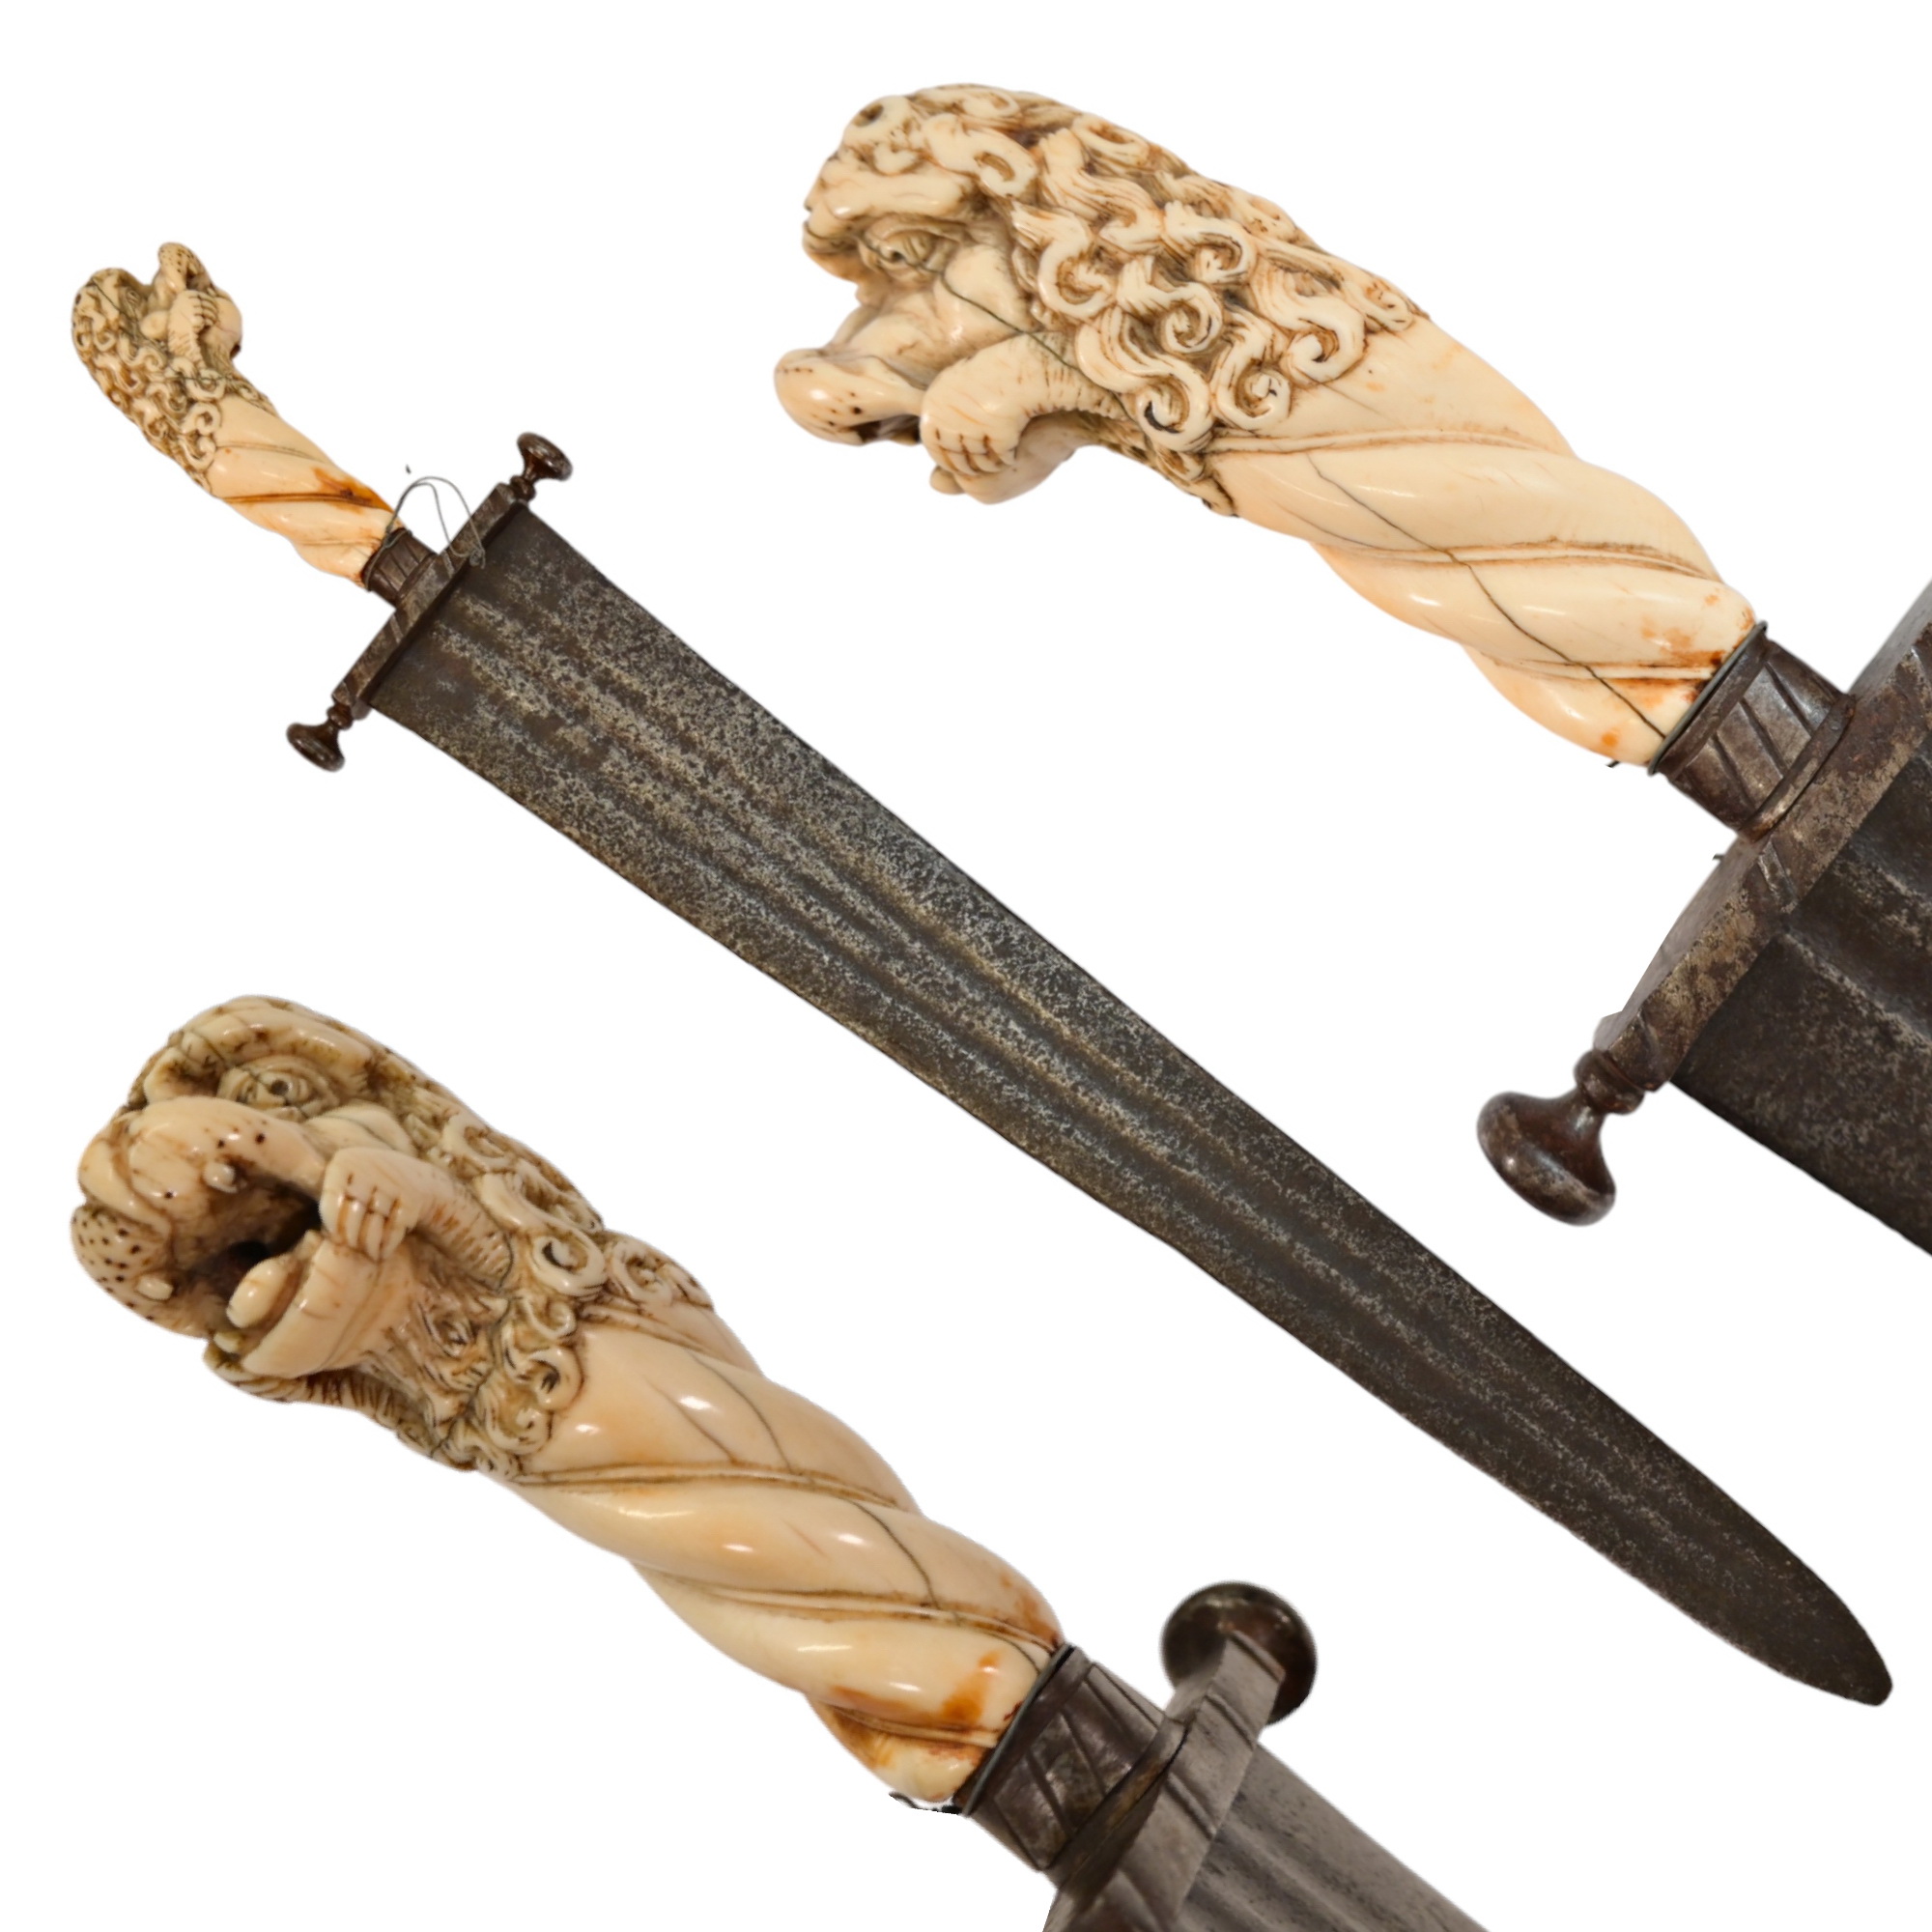 Rare Cinquedea type Sword, 16-17th Century, Italy.